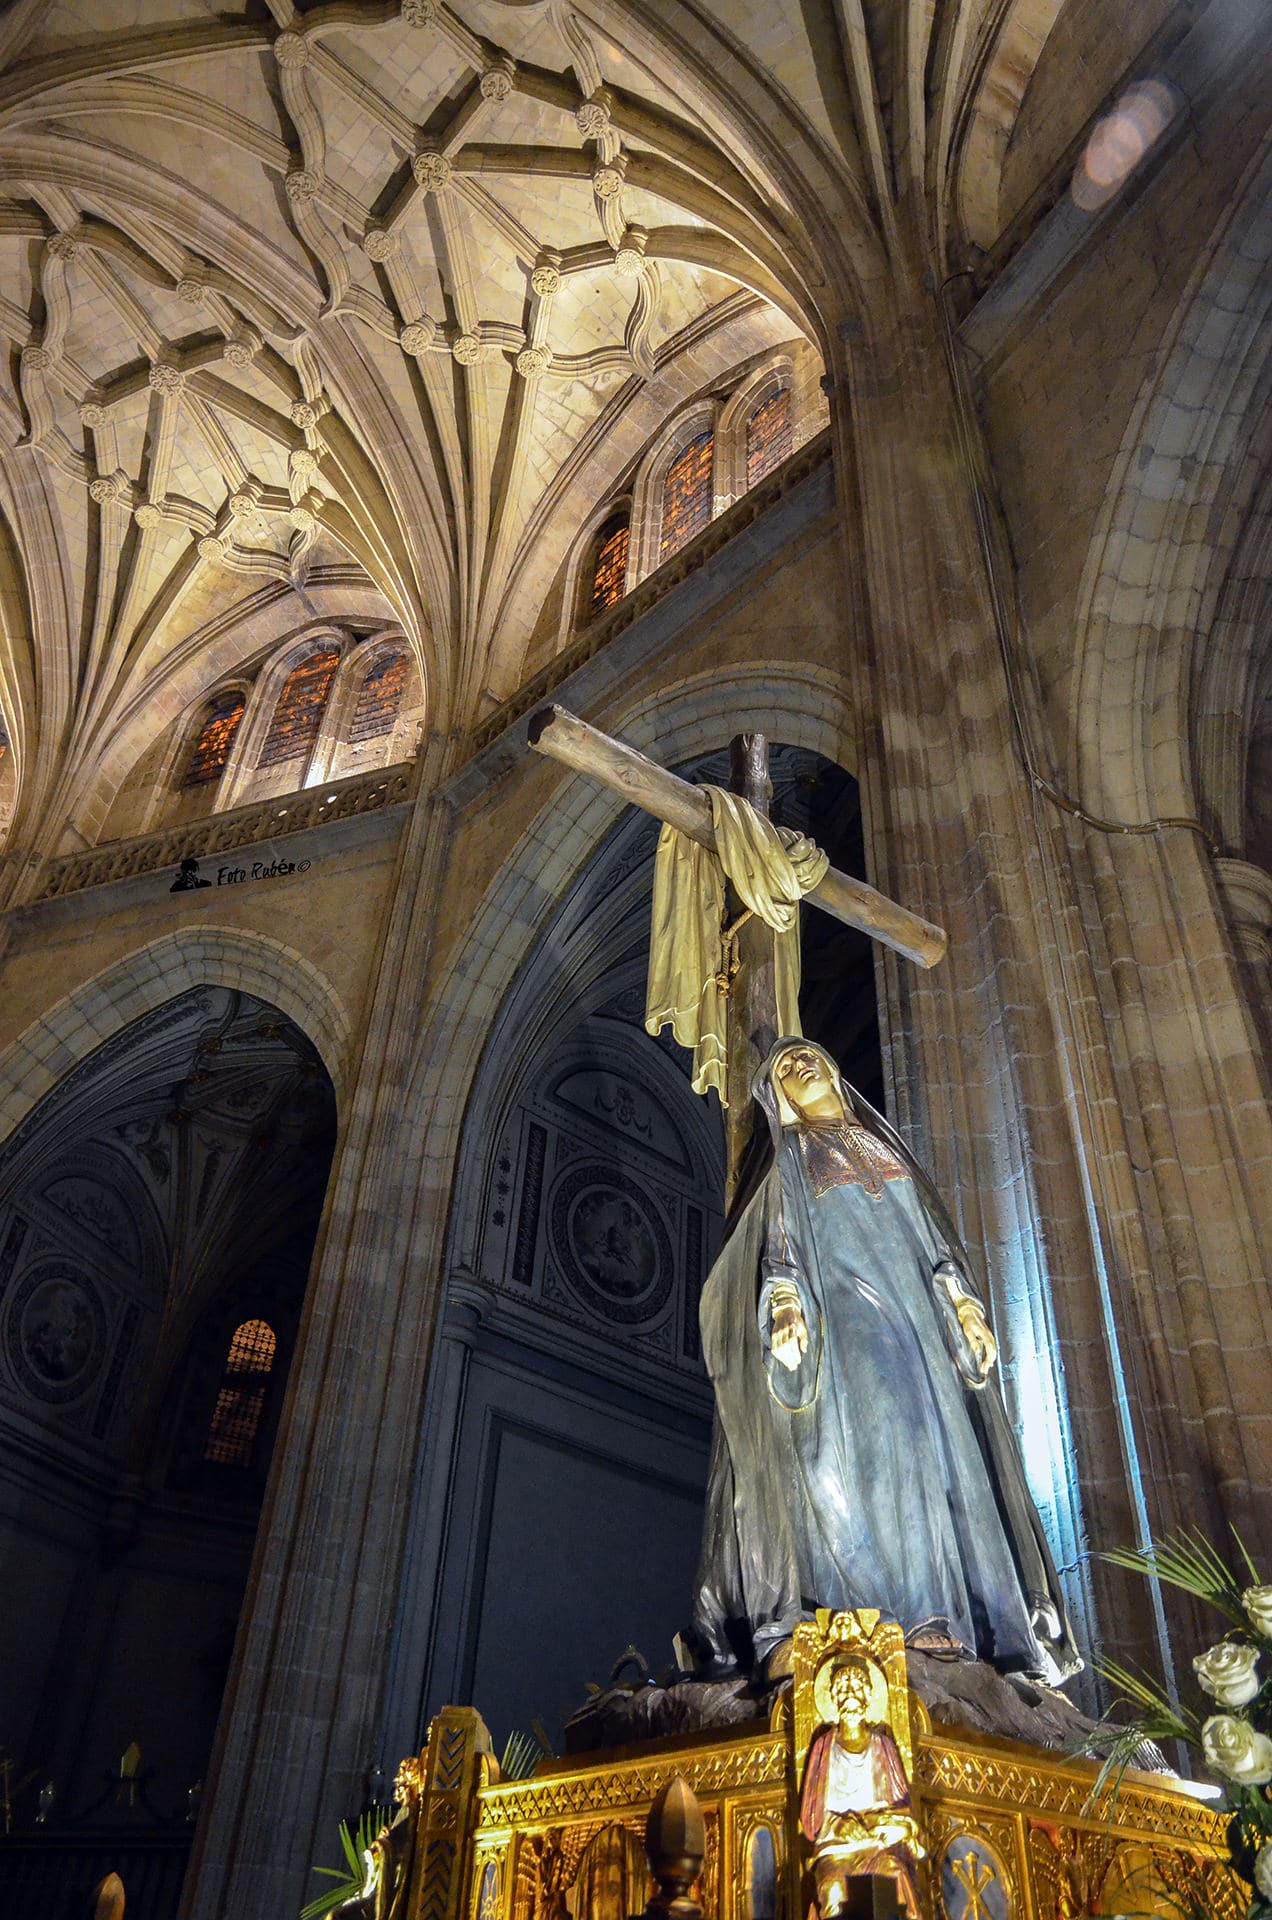 Prosesión de Ntra. Sr. La Soledad al Pie de la Cruz y el Santísimo Cristo en su última palabra, Segovia 3